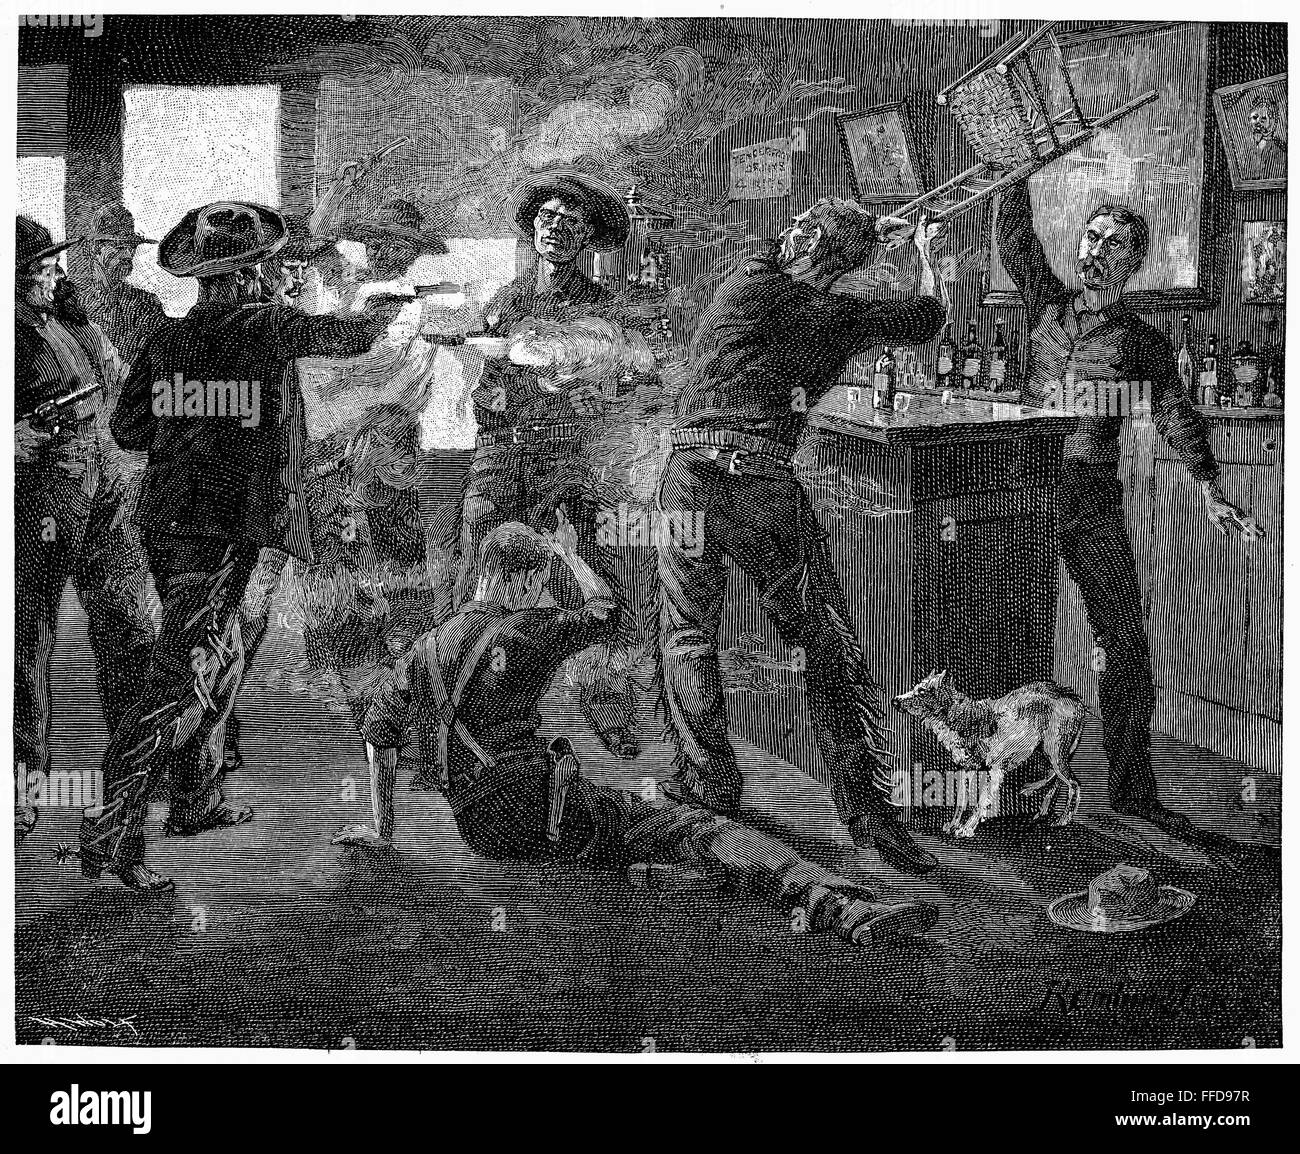 Salvaje Oeste: Saloon lucha. /NA fila en una ciudad ganadera. Grabado de línea, del siglo XIX. Foto de stock